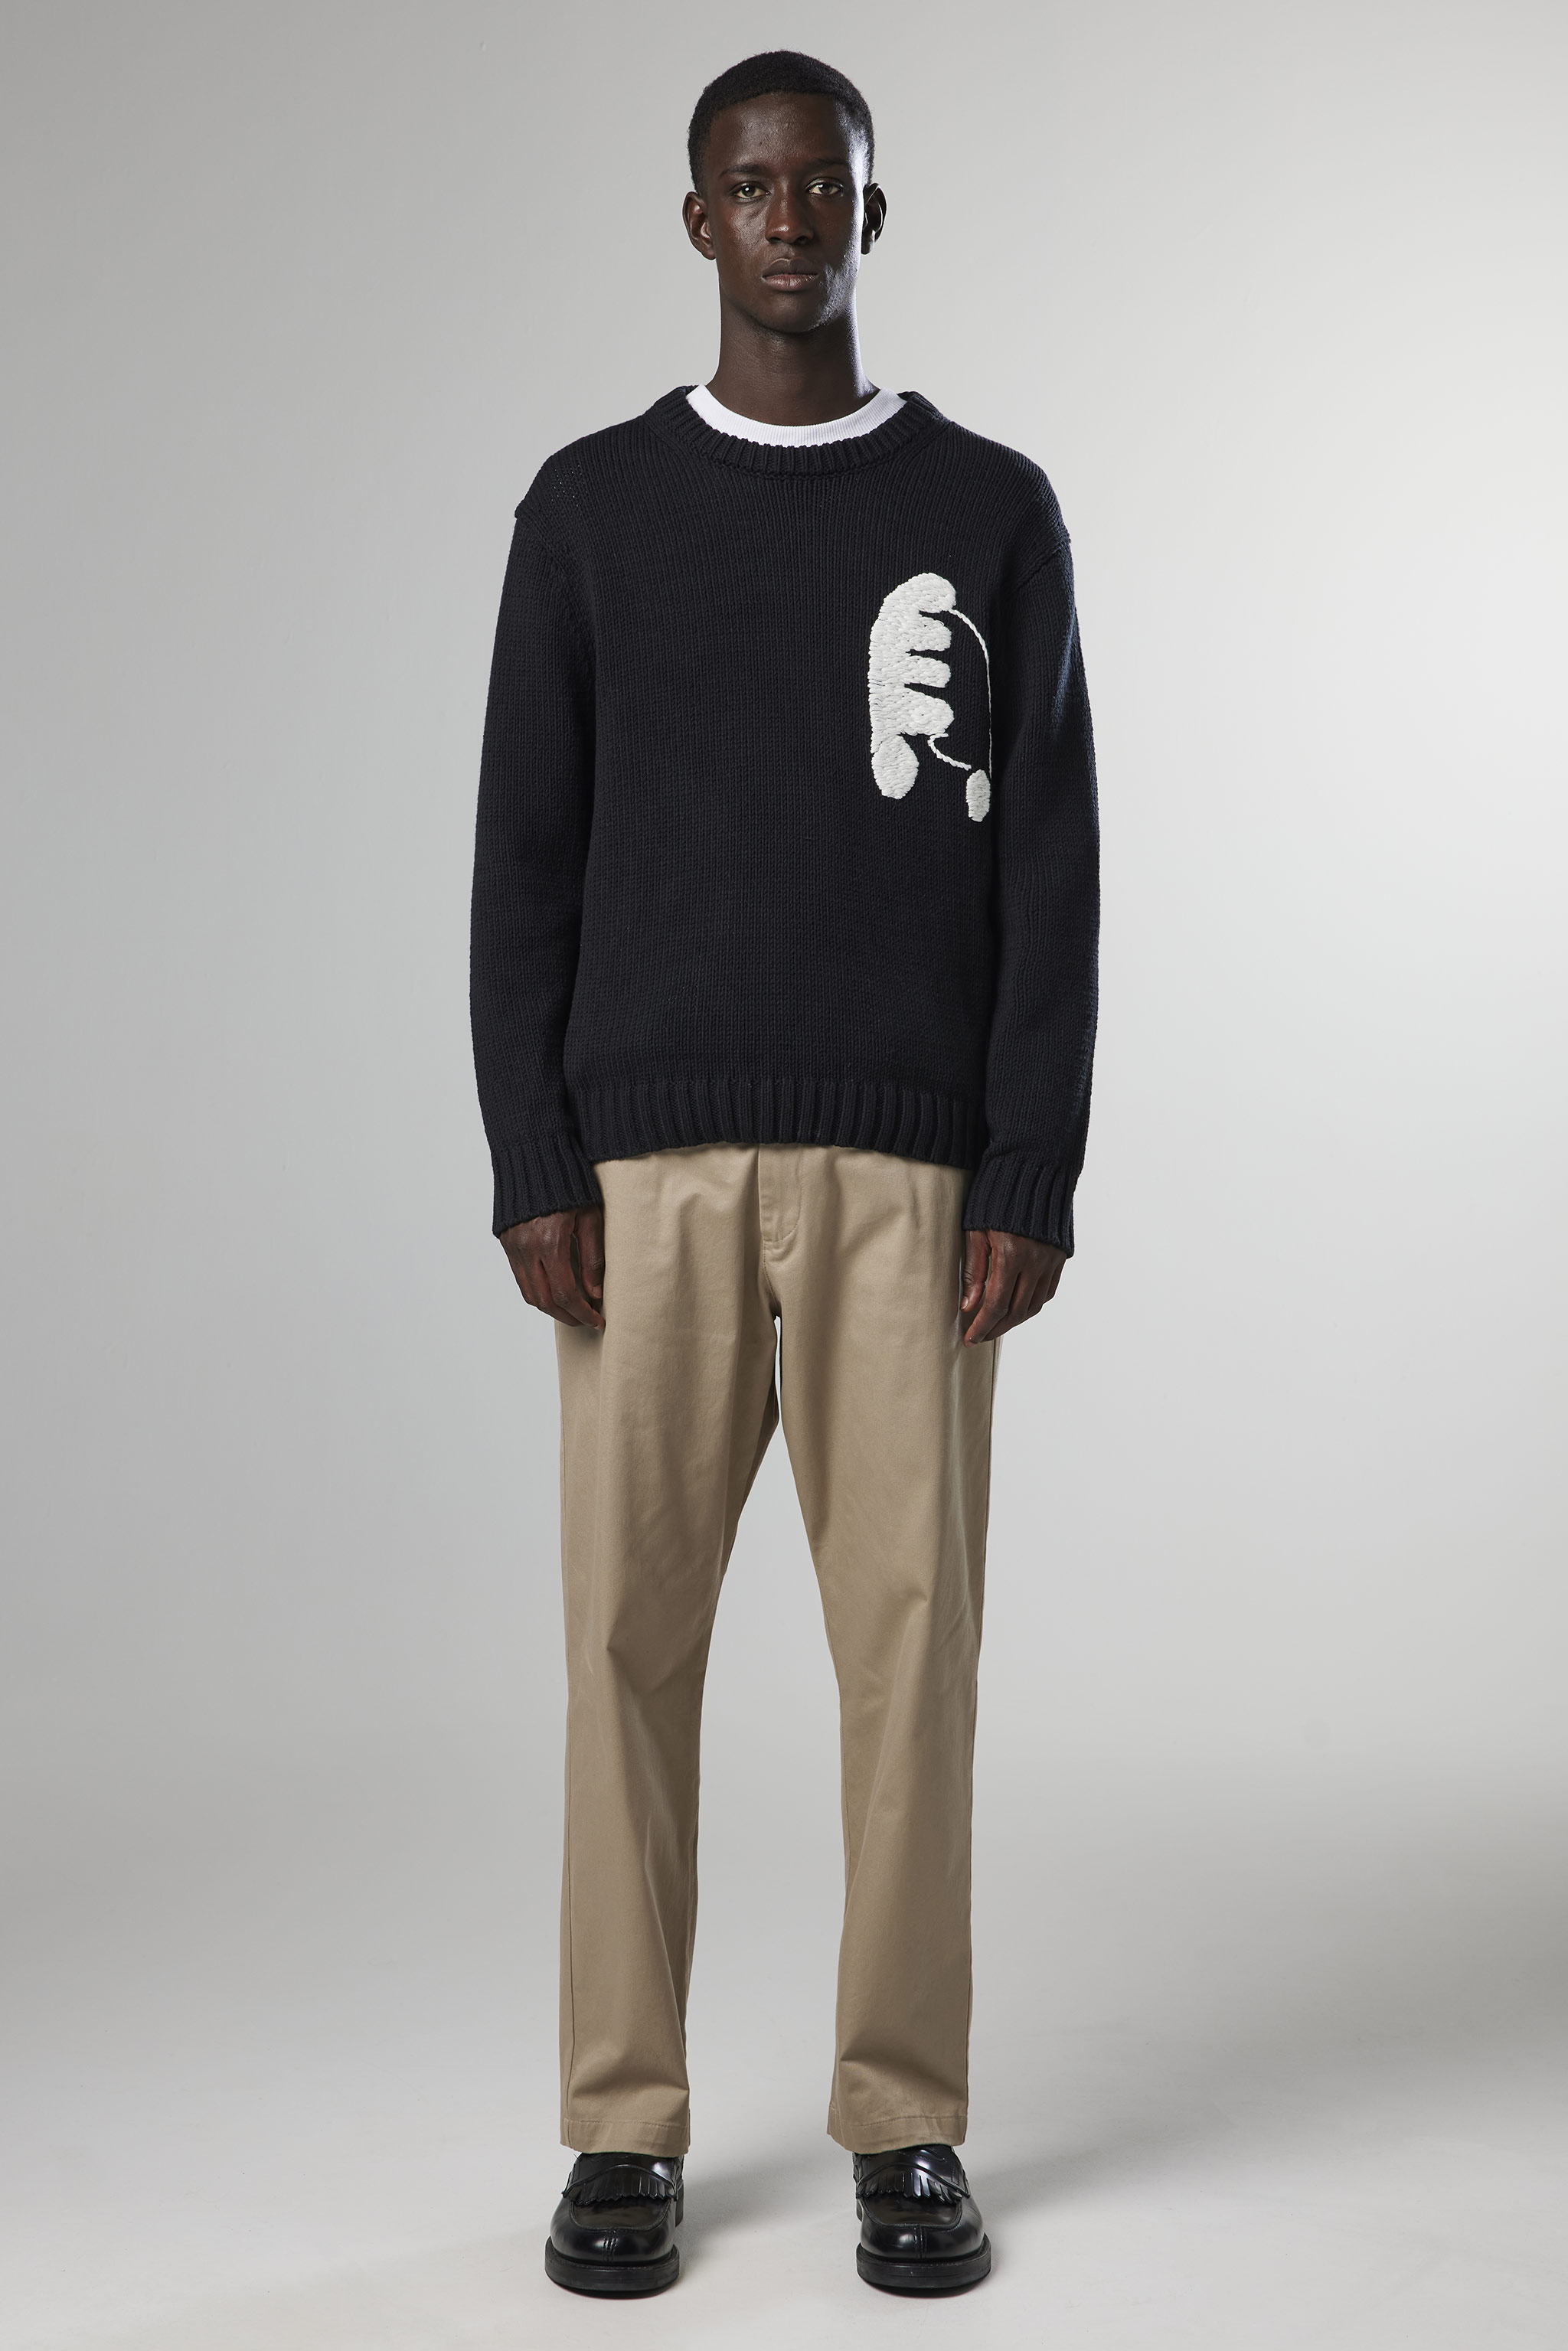 Jasper 6567 men's sweater - Black - Buy online at NN.07®